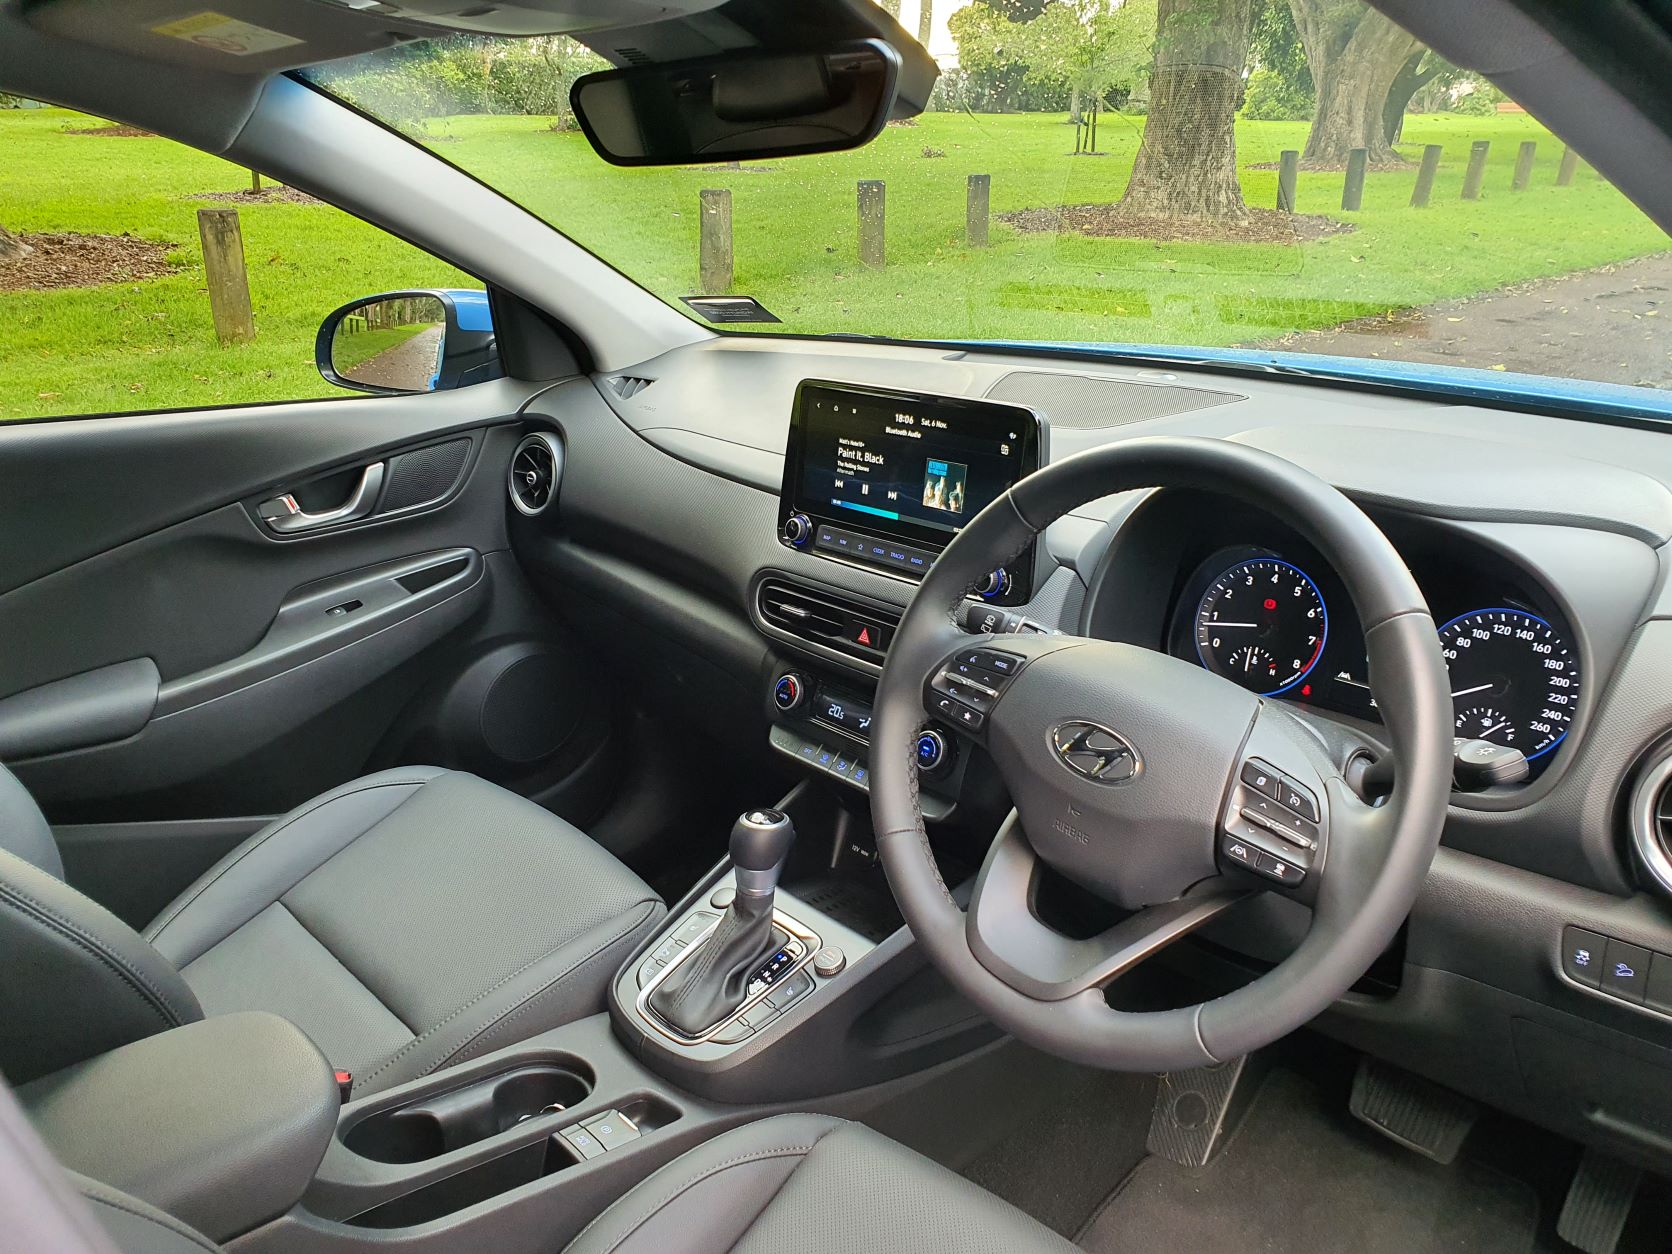 Interior view of the new Hyundai Kona Elite